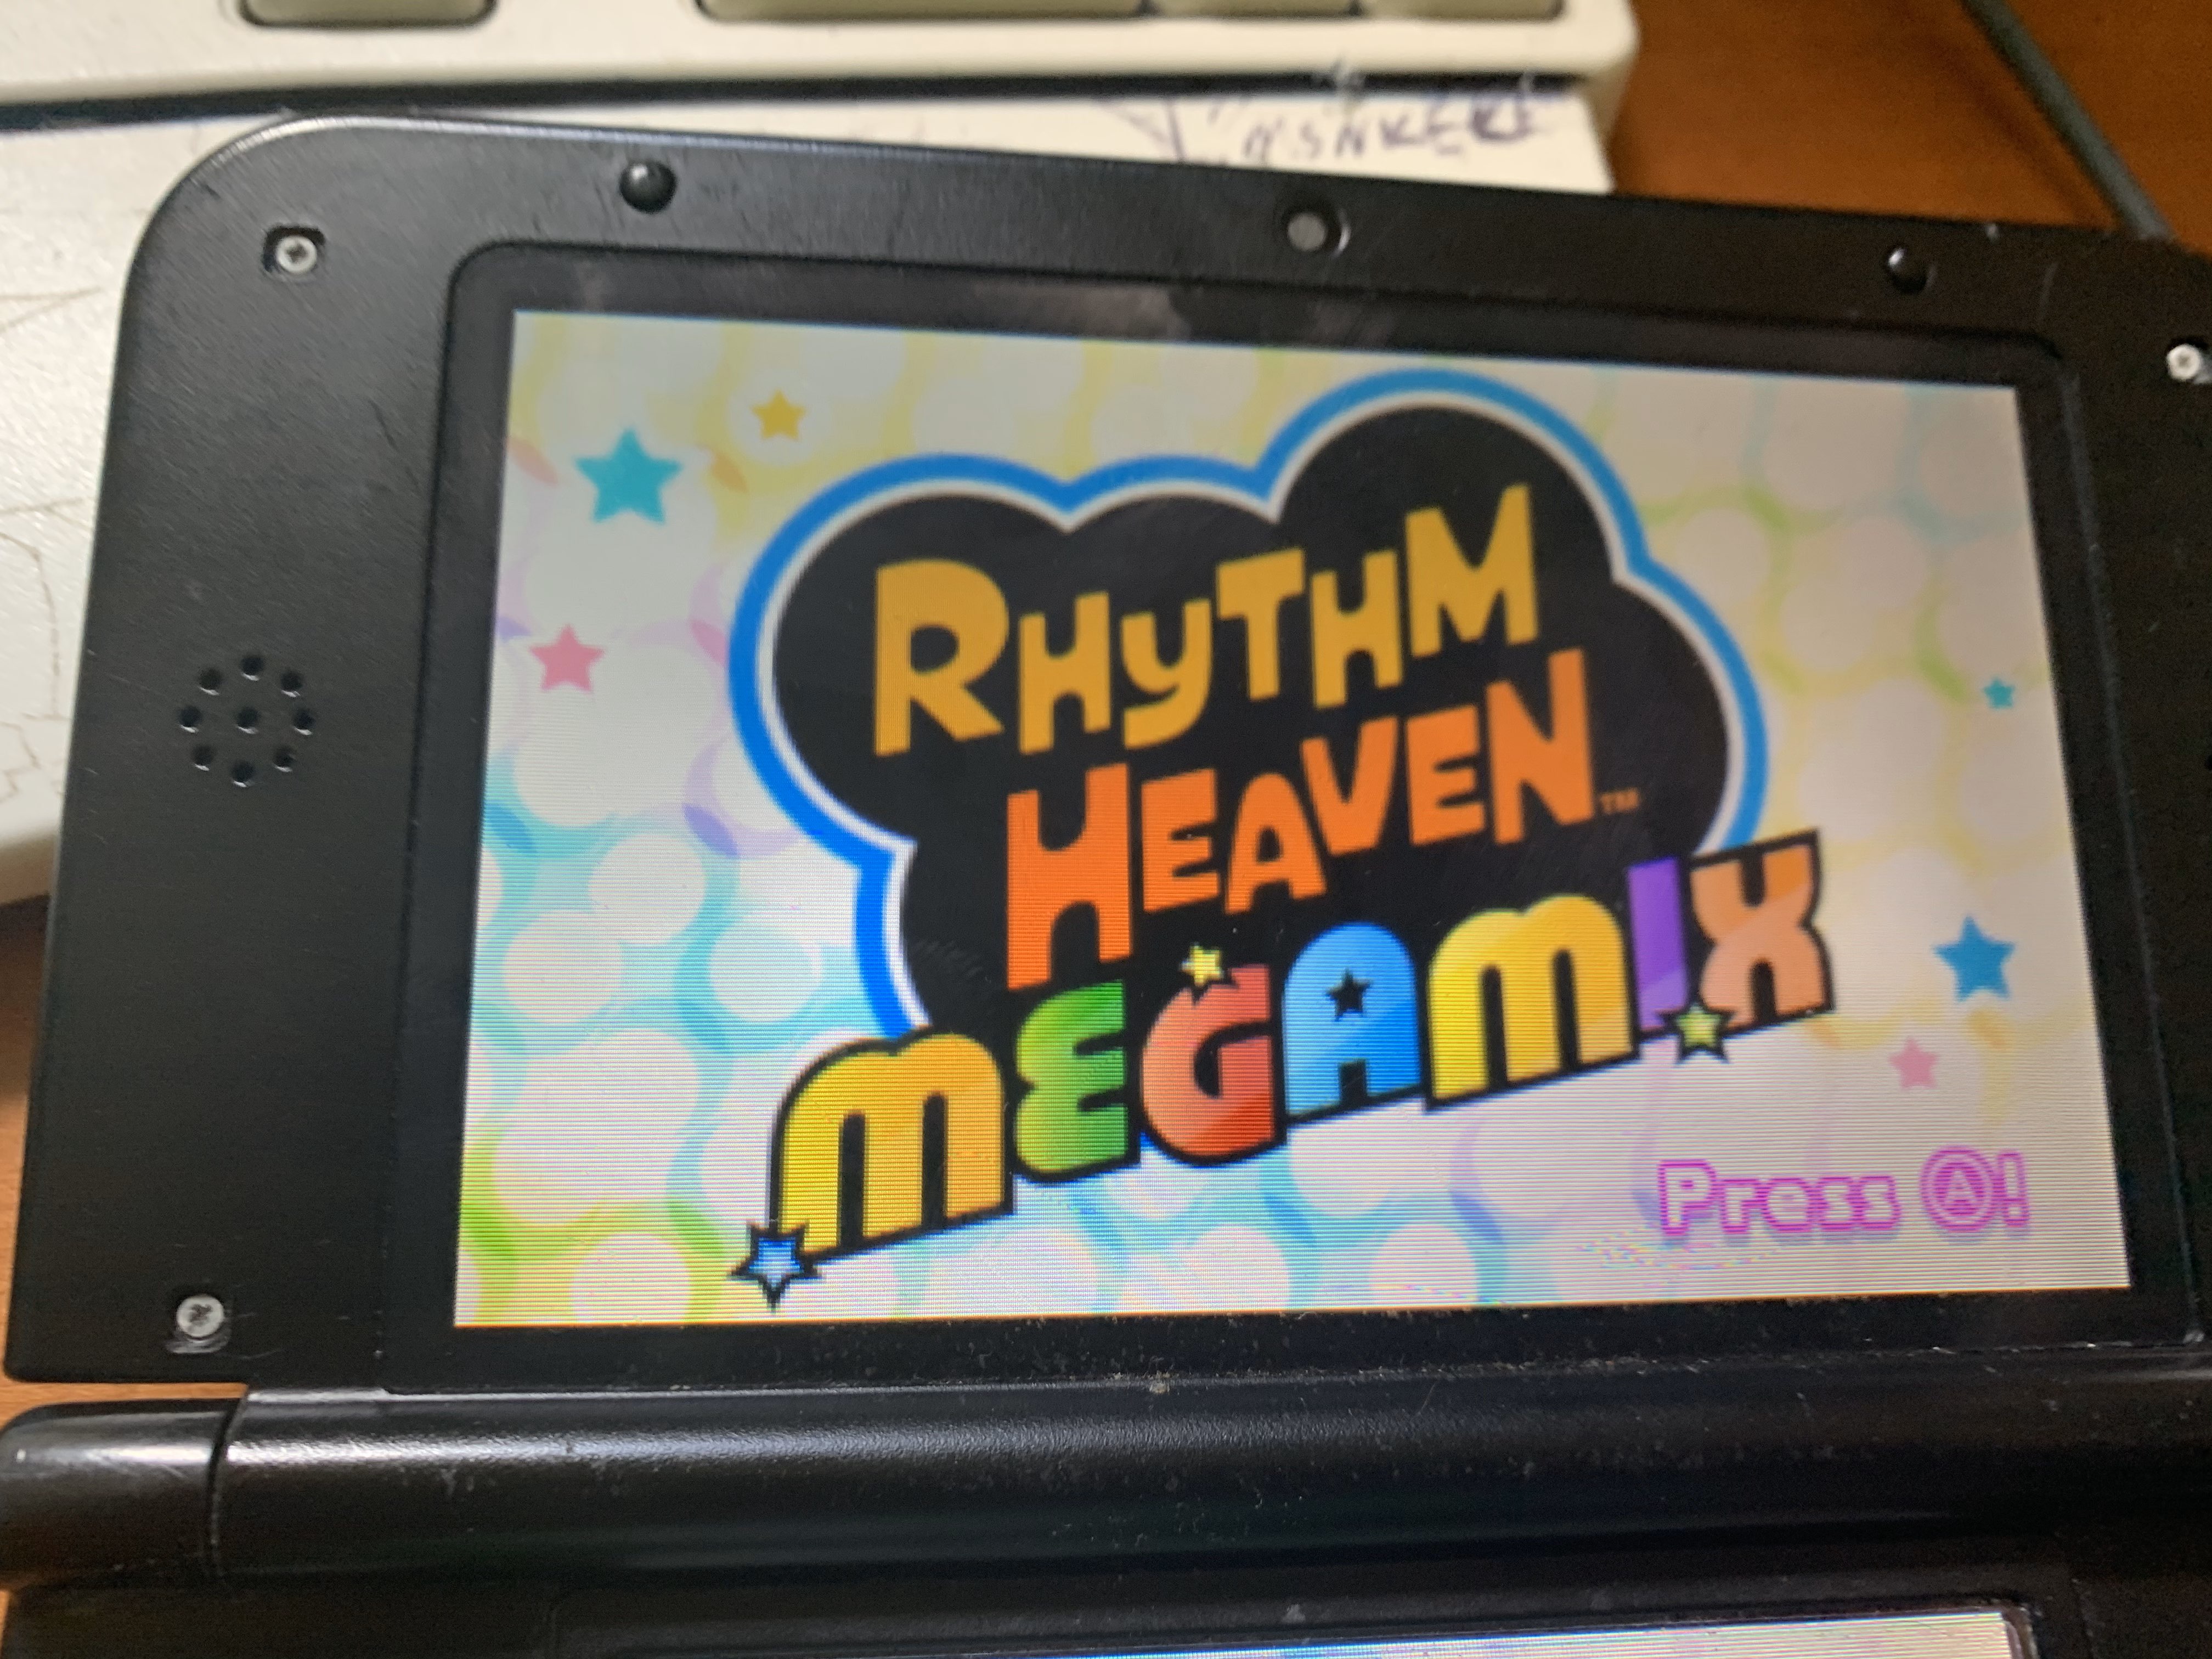 rhythm heaven megamix ninja arrow game